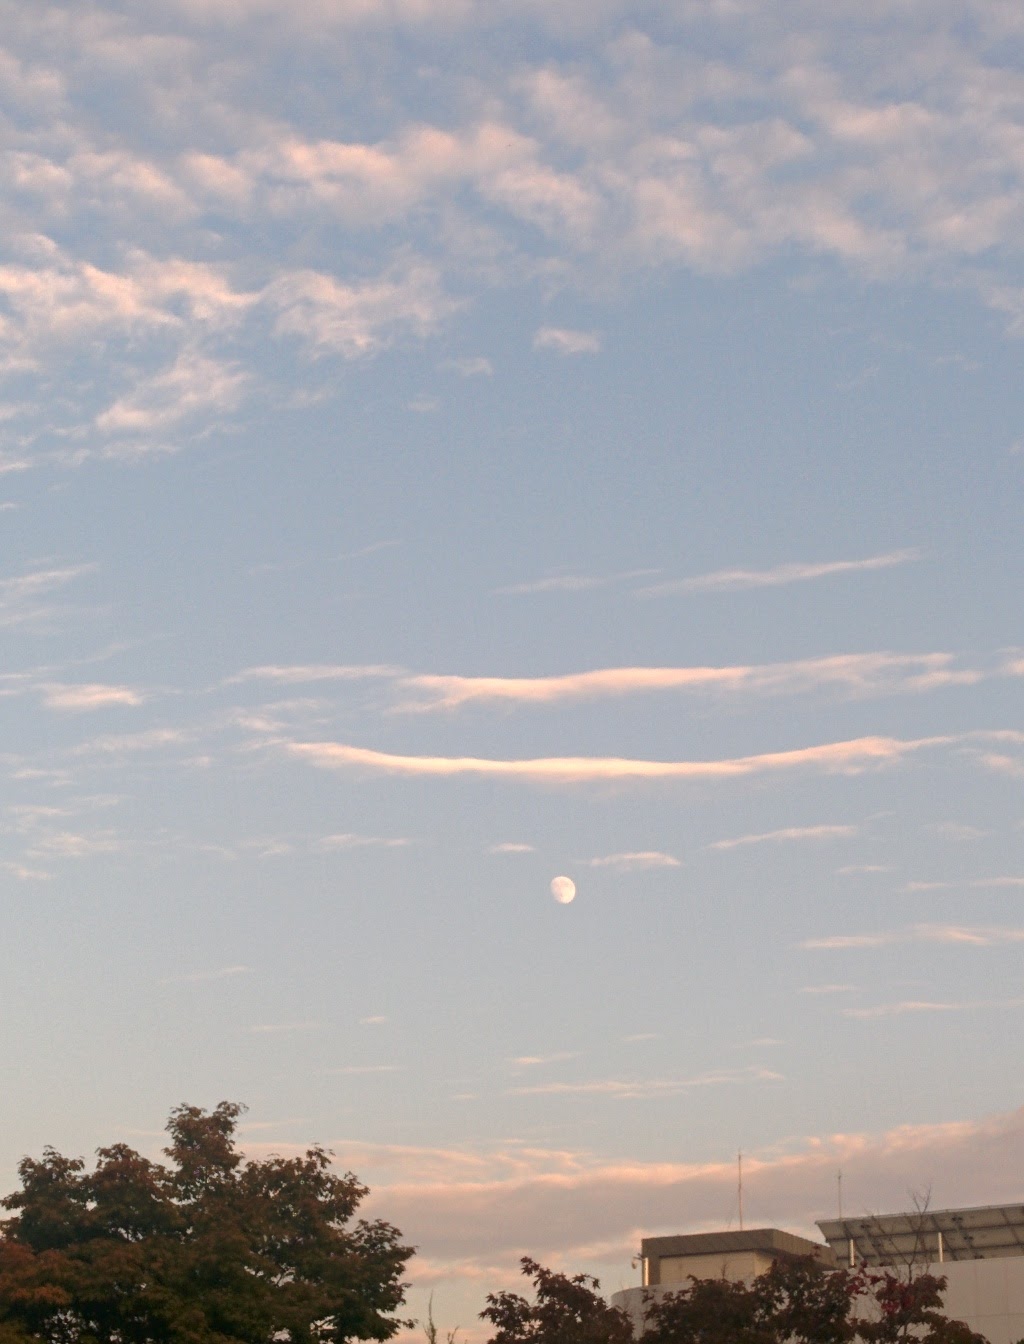 IMG_20150925_175439.jpg 물결구름 사이로 흐르는 KISTI의 달